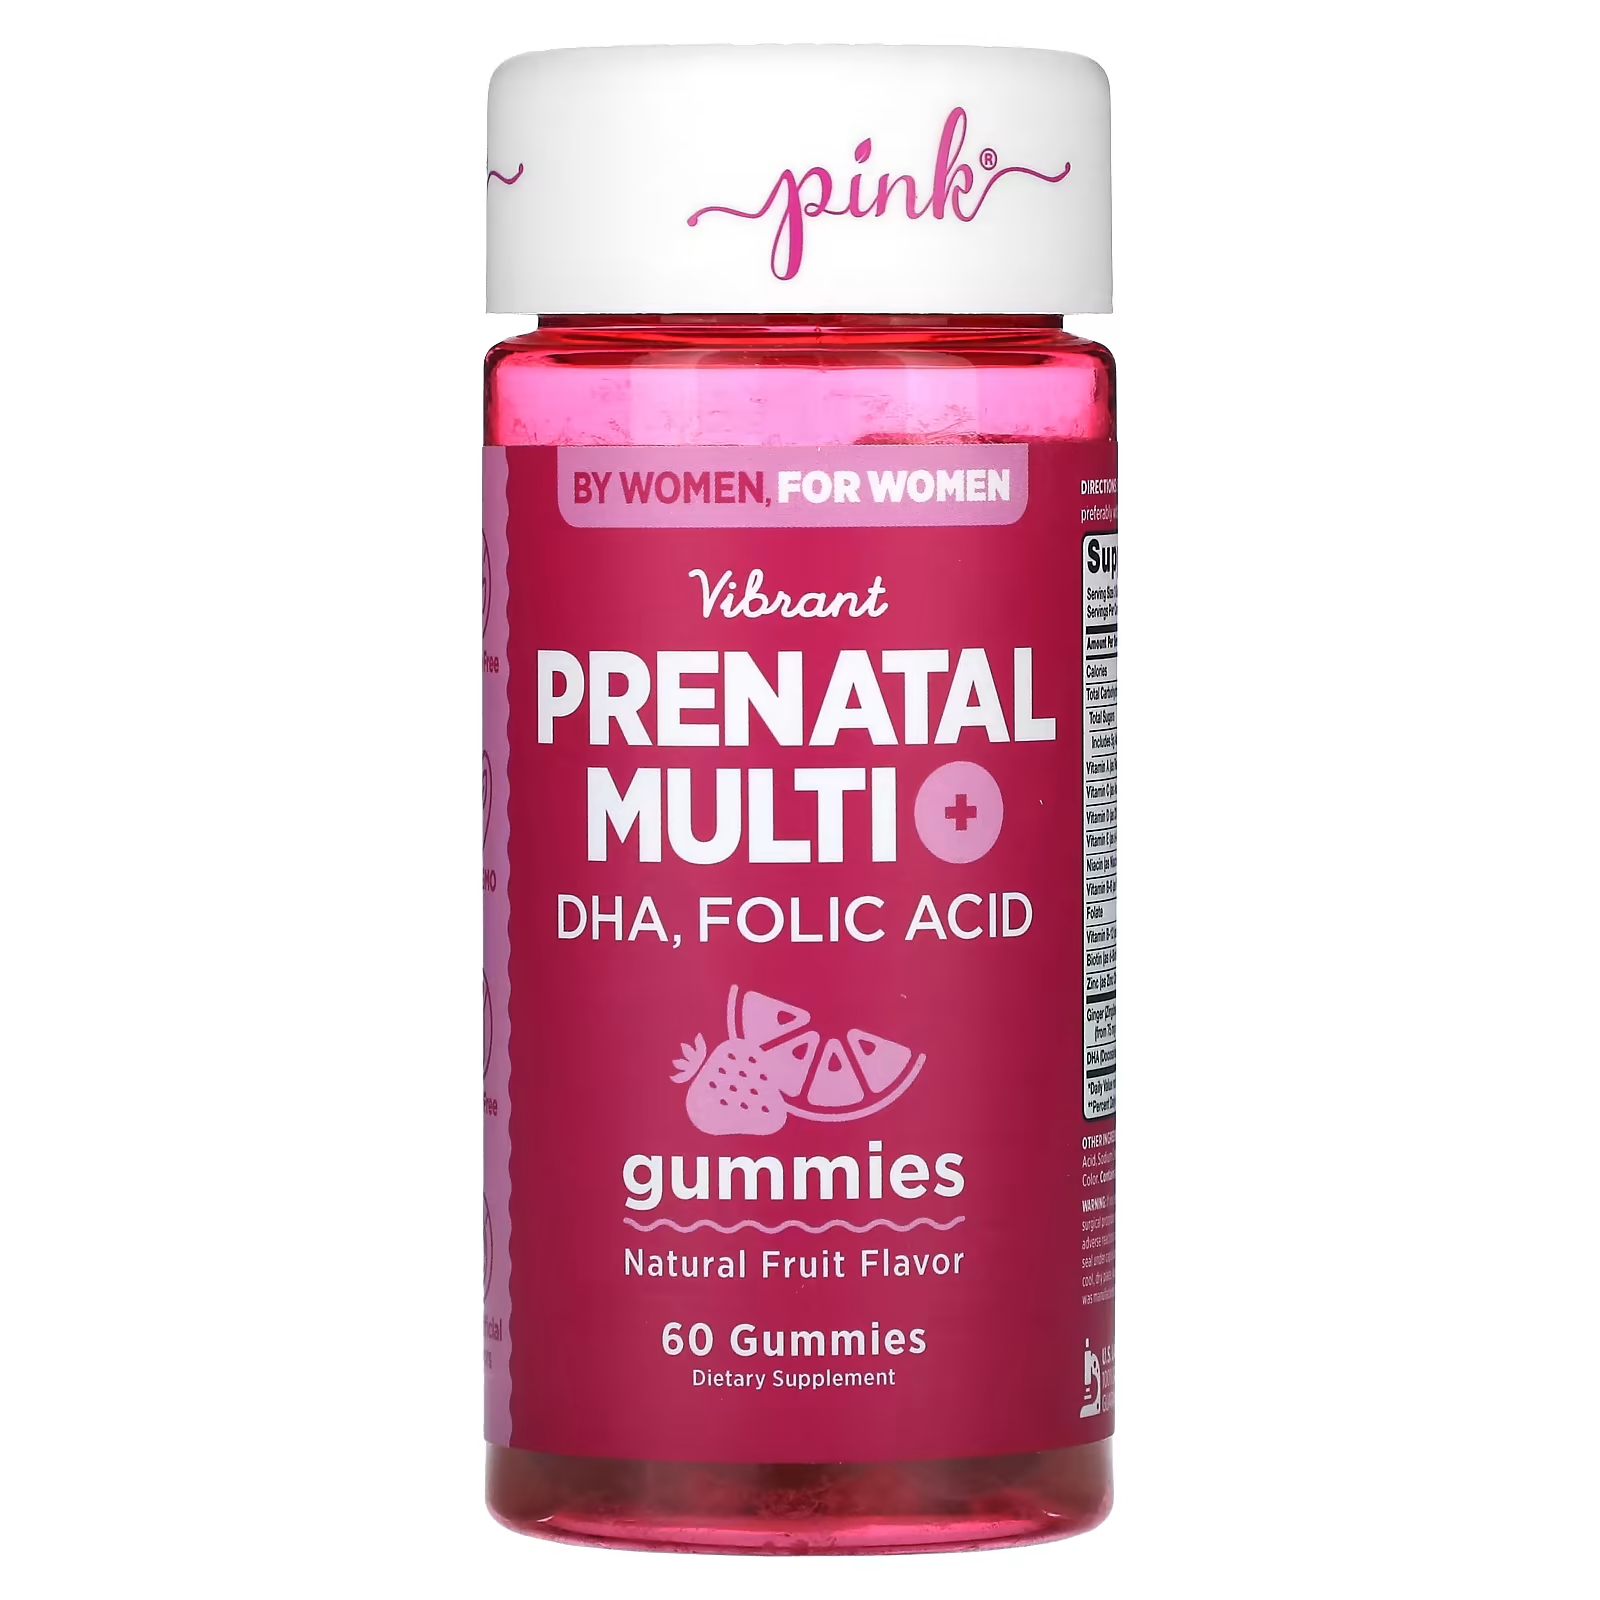 Мультивитамины пренатальные Pink натуральные фрукты, 60 жевательных таблеток pink vibrant prenatal multi dha фолиевая кислота натуральные фрукты 60 жевательных таблеток